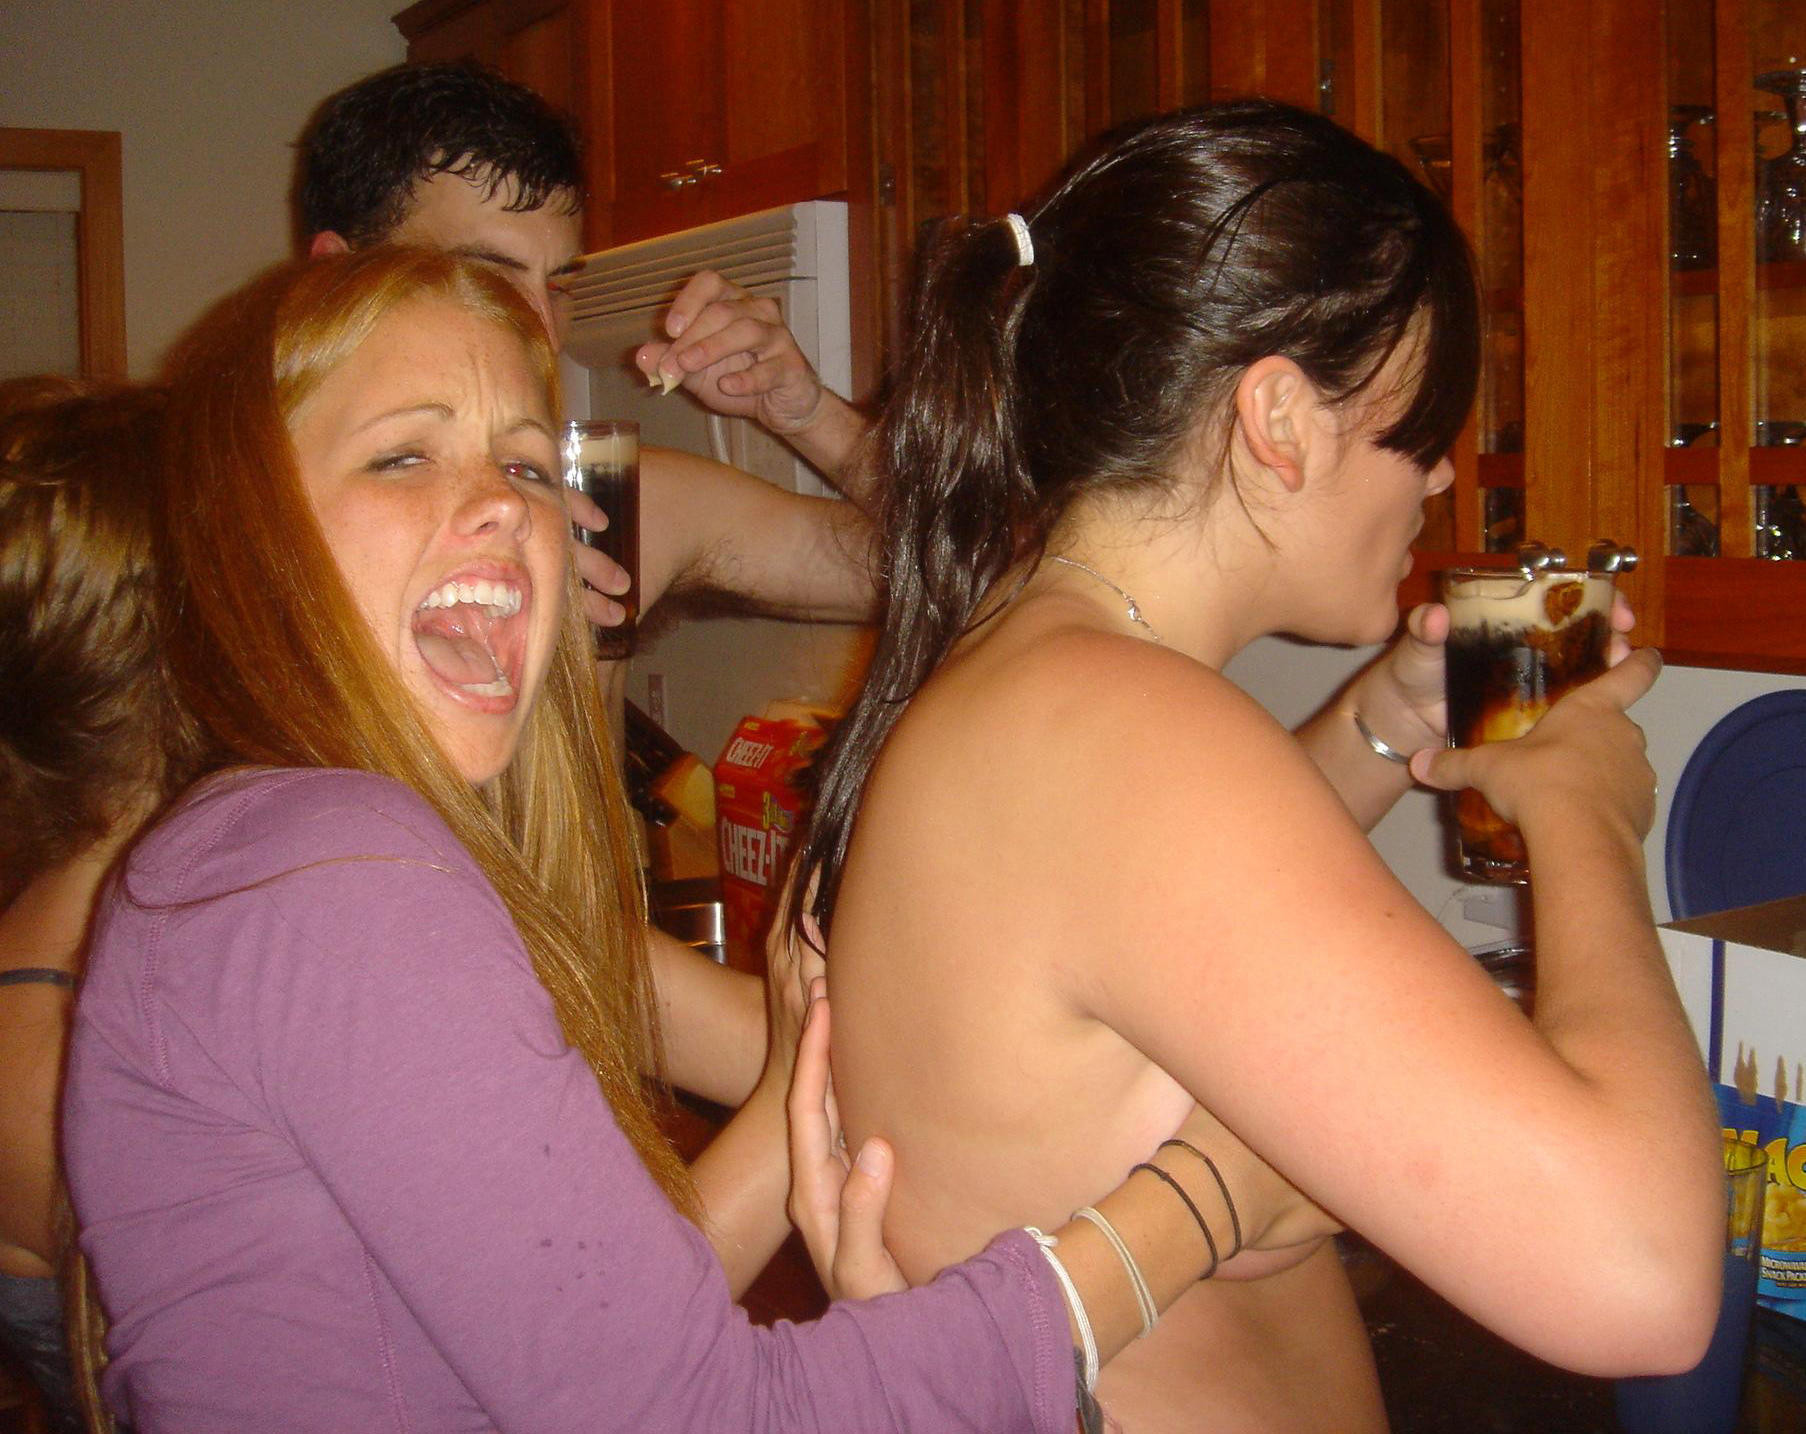 Chica borracha orinando en el fregadero mientras su novia orina en el inodoro
 #78693453